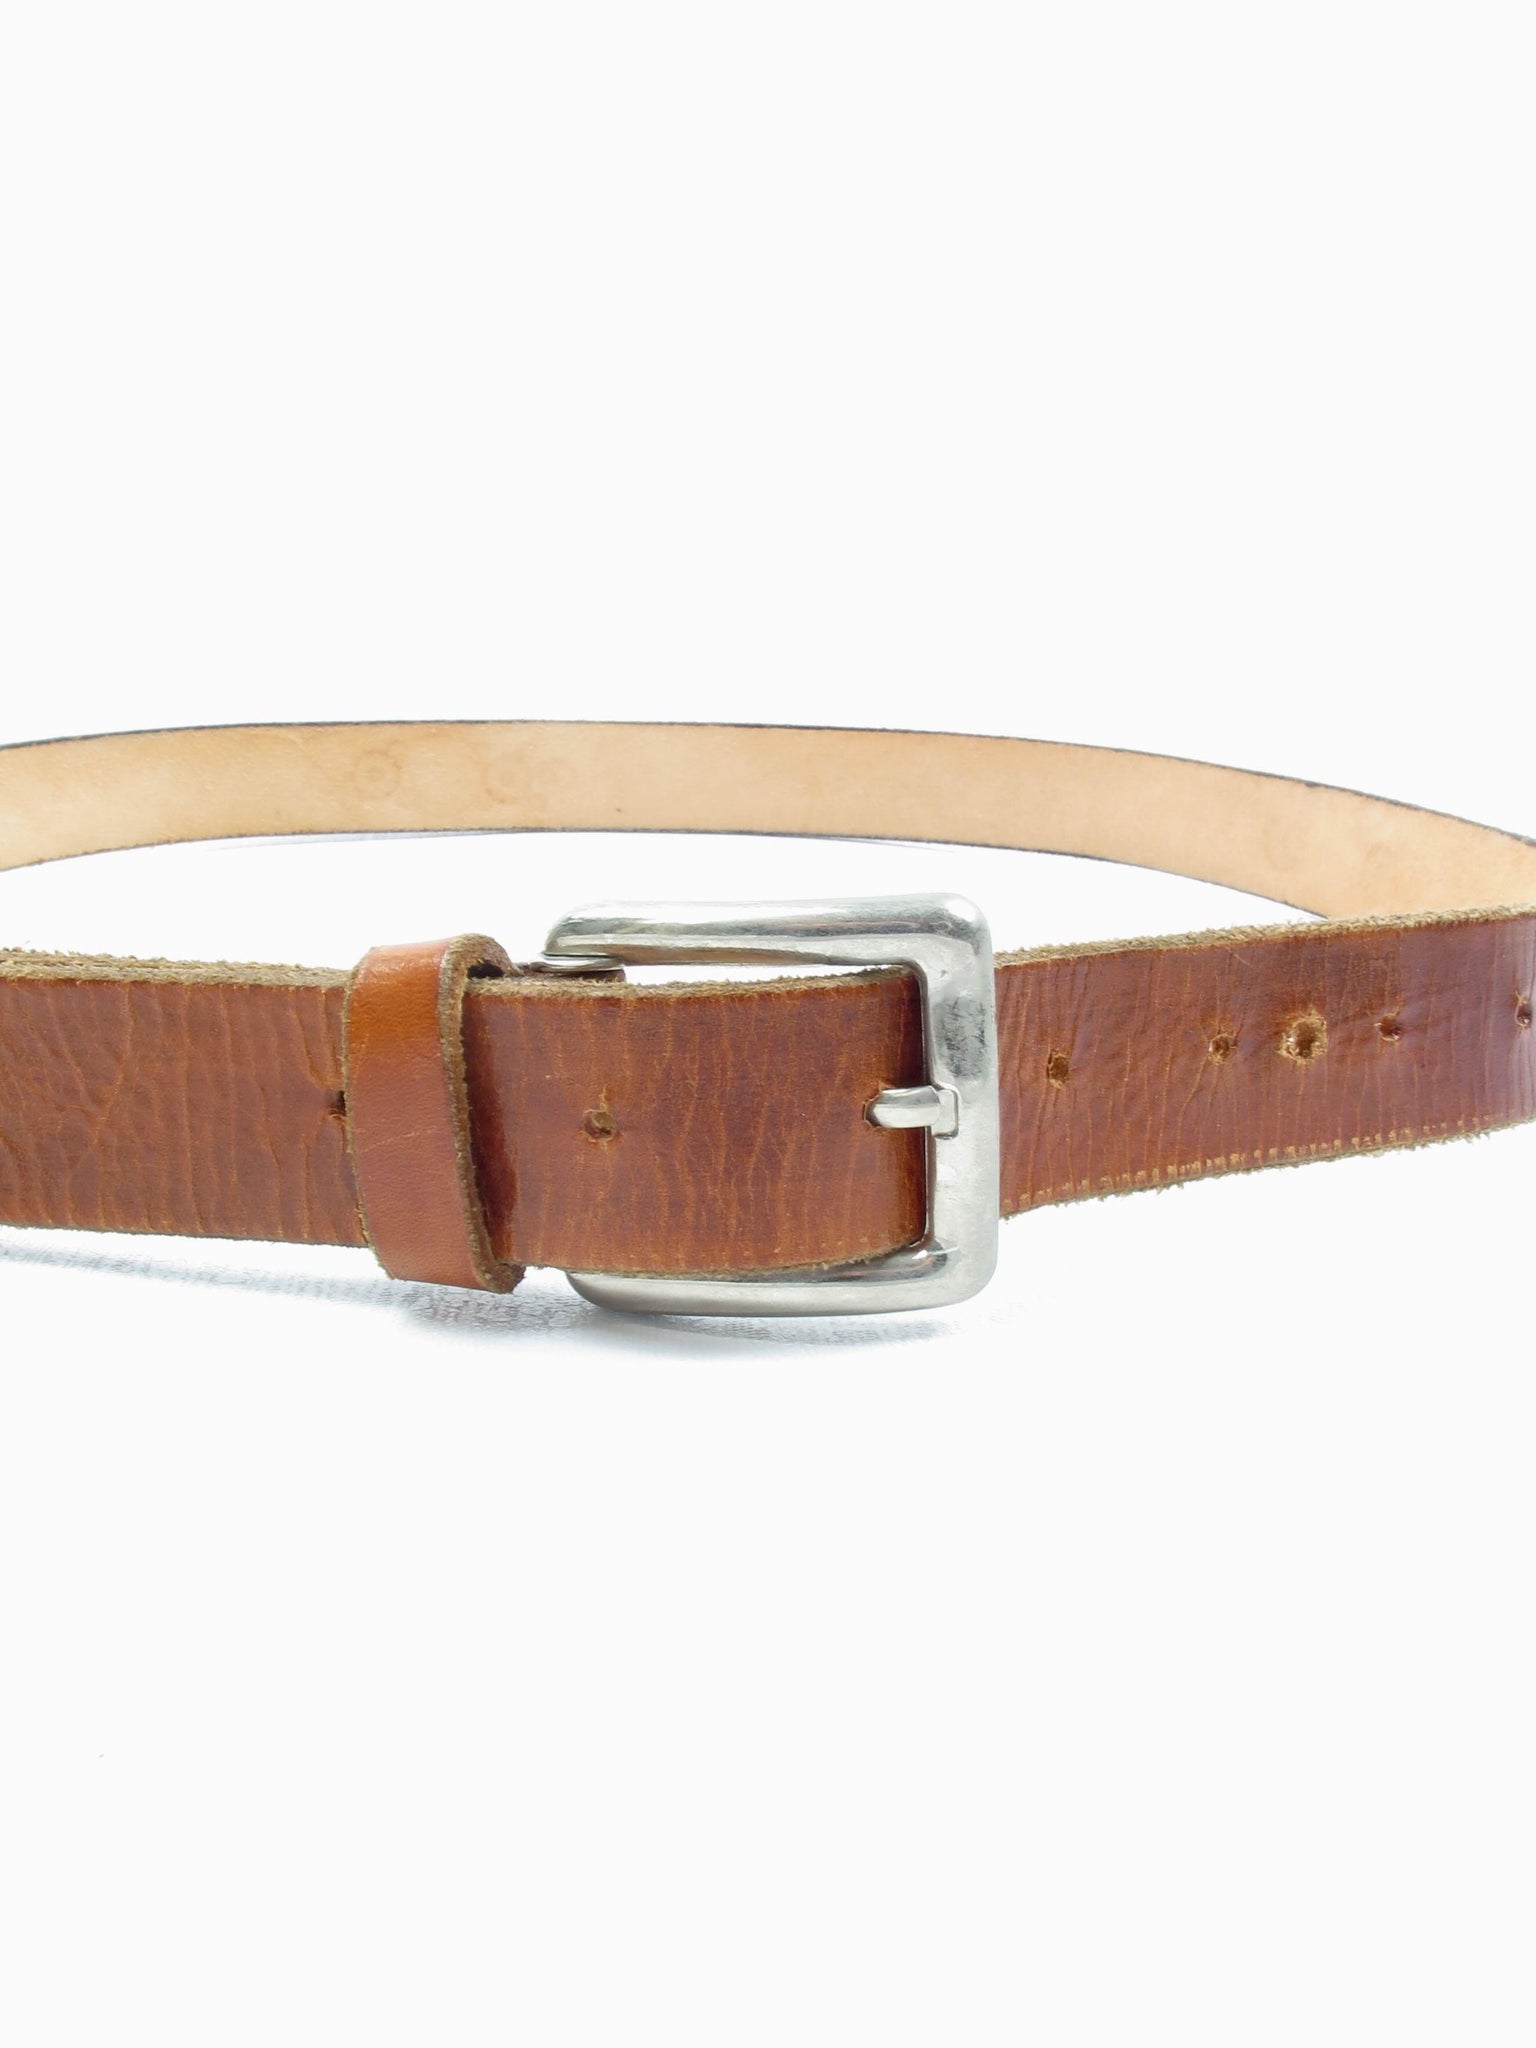 Tan Vintage Leather Belt L - The Harlequin